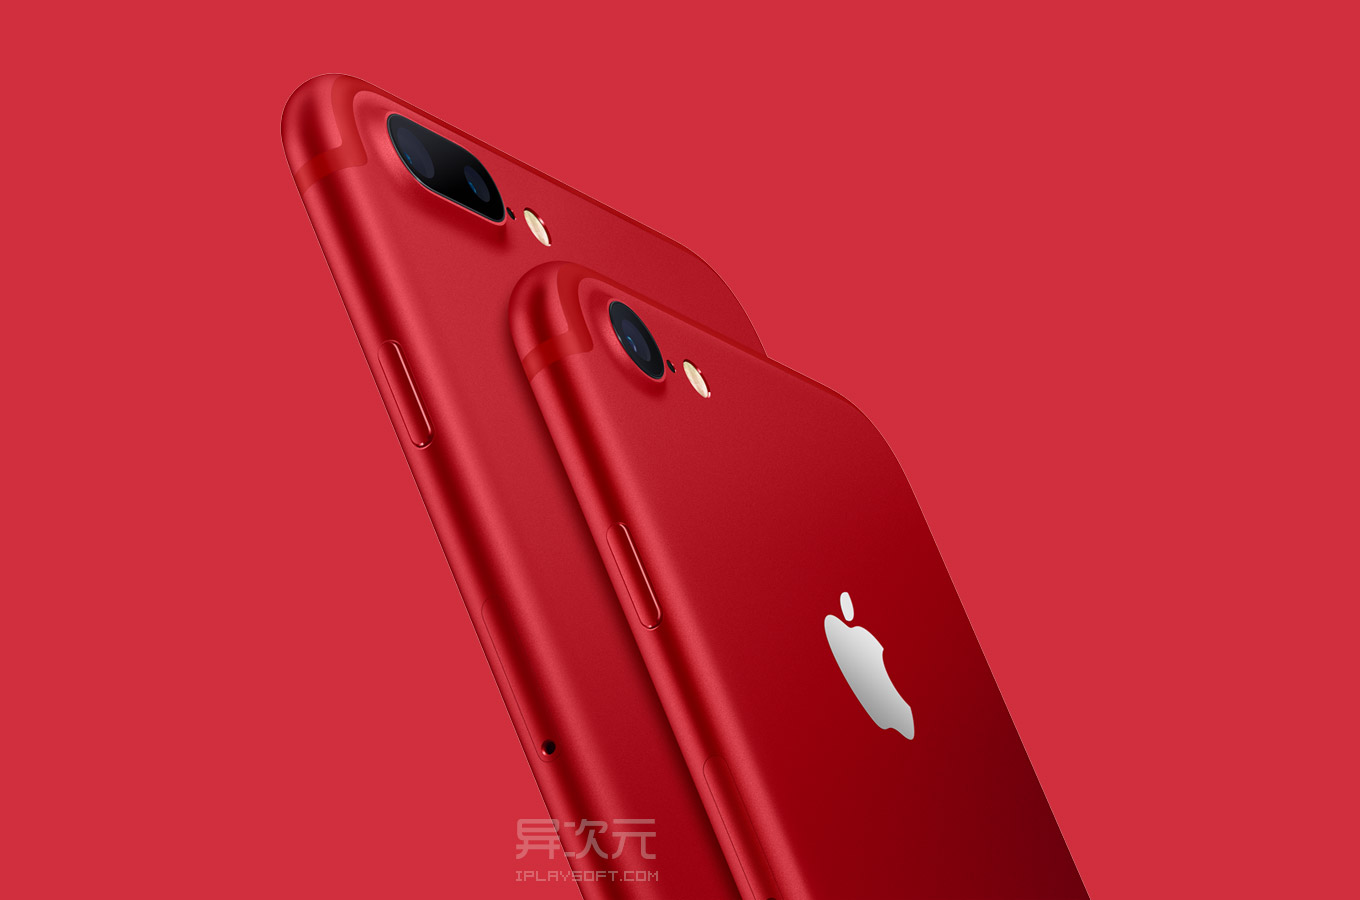 iPhone 7 i 7 Plus (PRODUCT)RED Special Edition z okazji 10 lat partnerstwa z (RED) | iMagazine